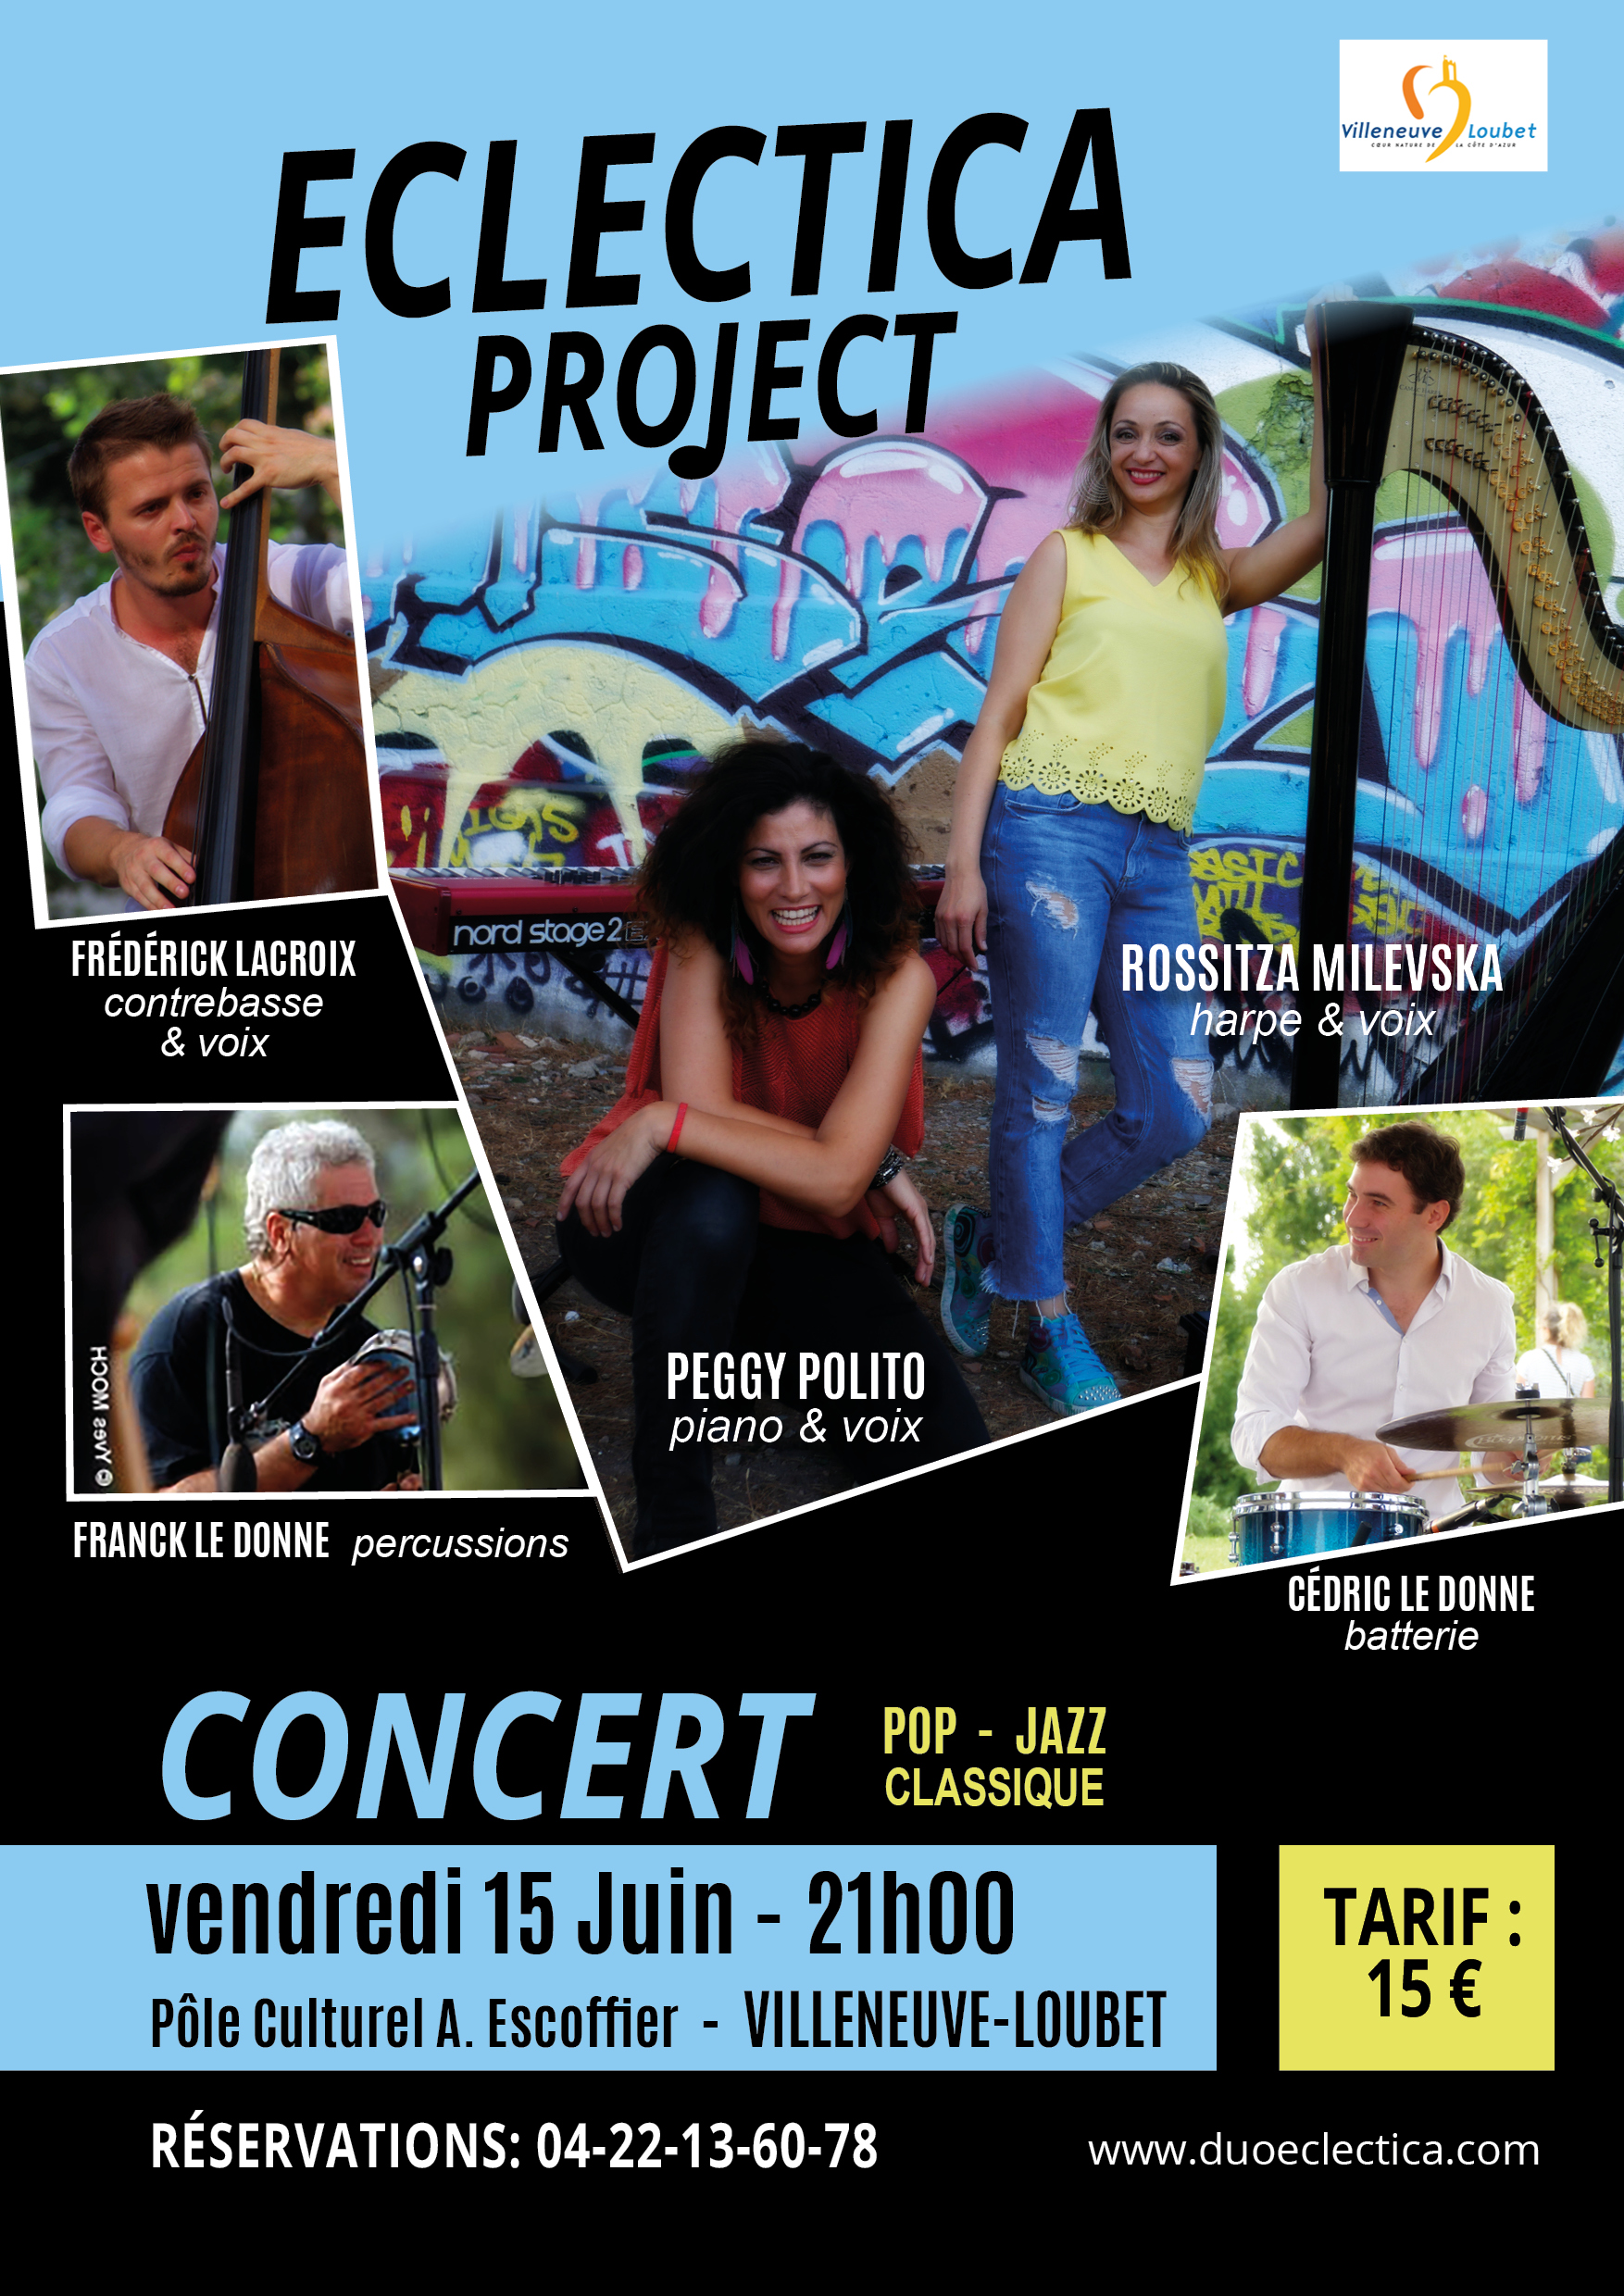 eclectica project musique concert